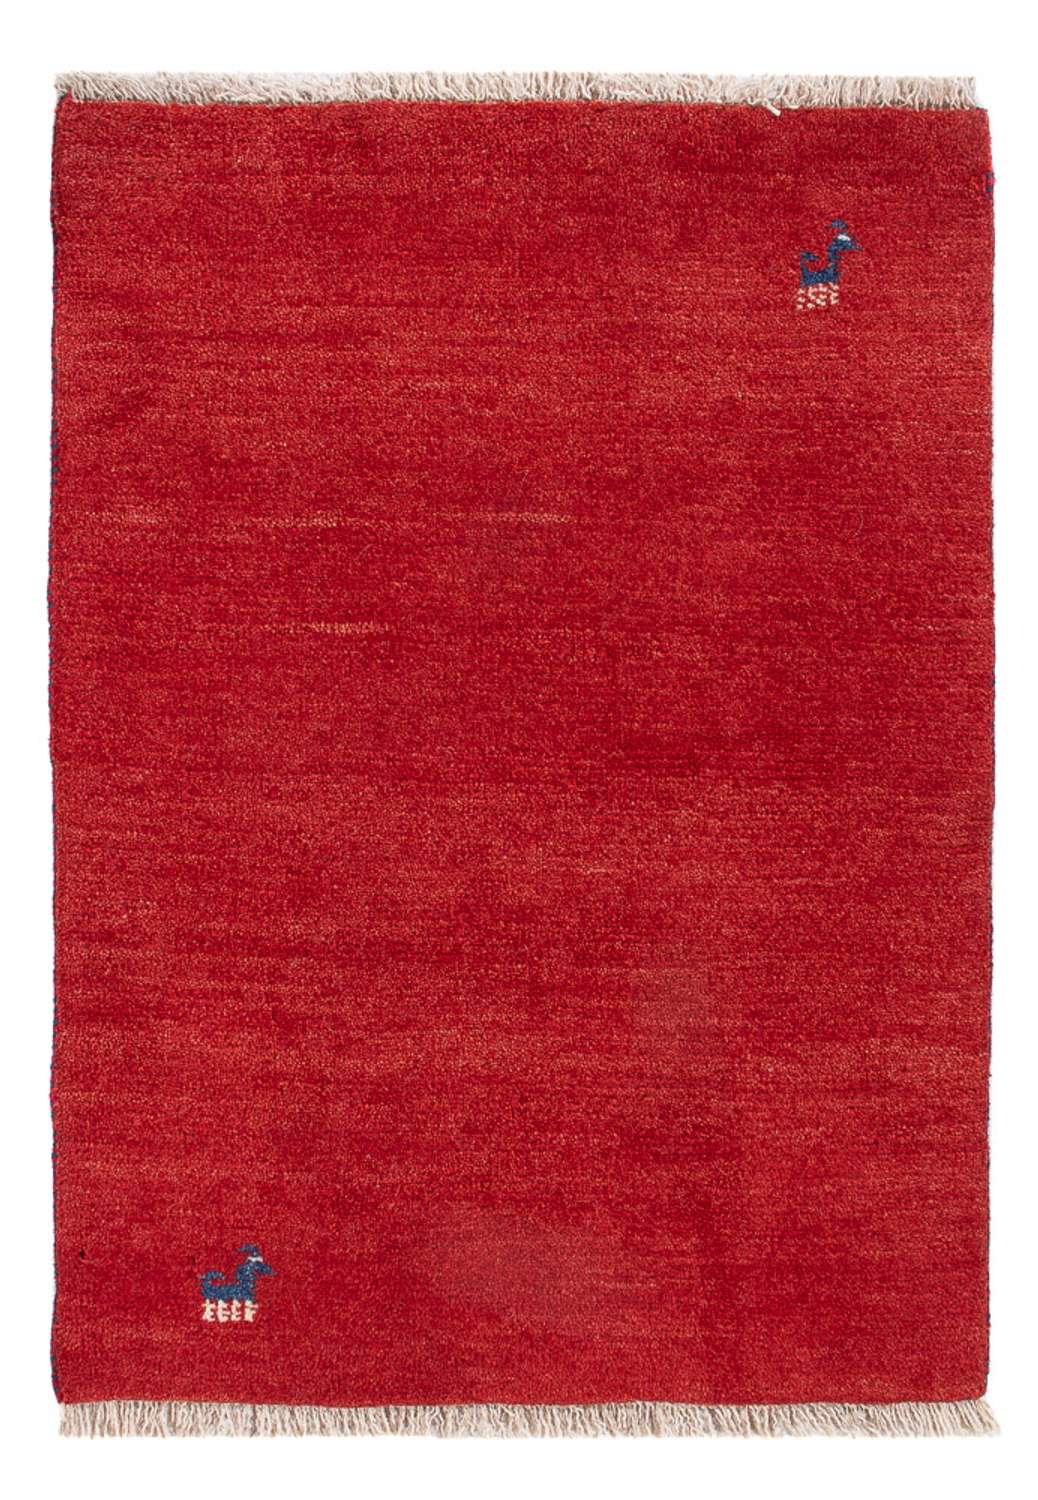 Gabbeh Koberec - Perský - 84 x 60 cm - červená